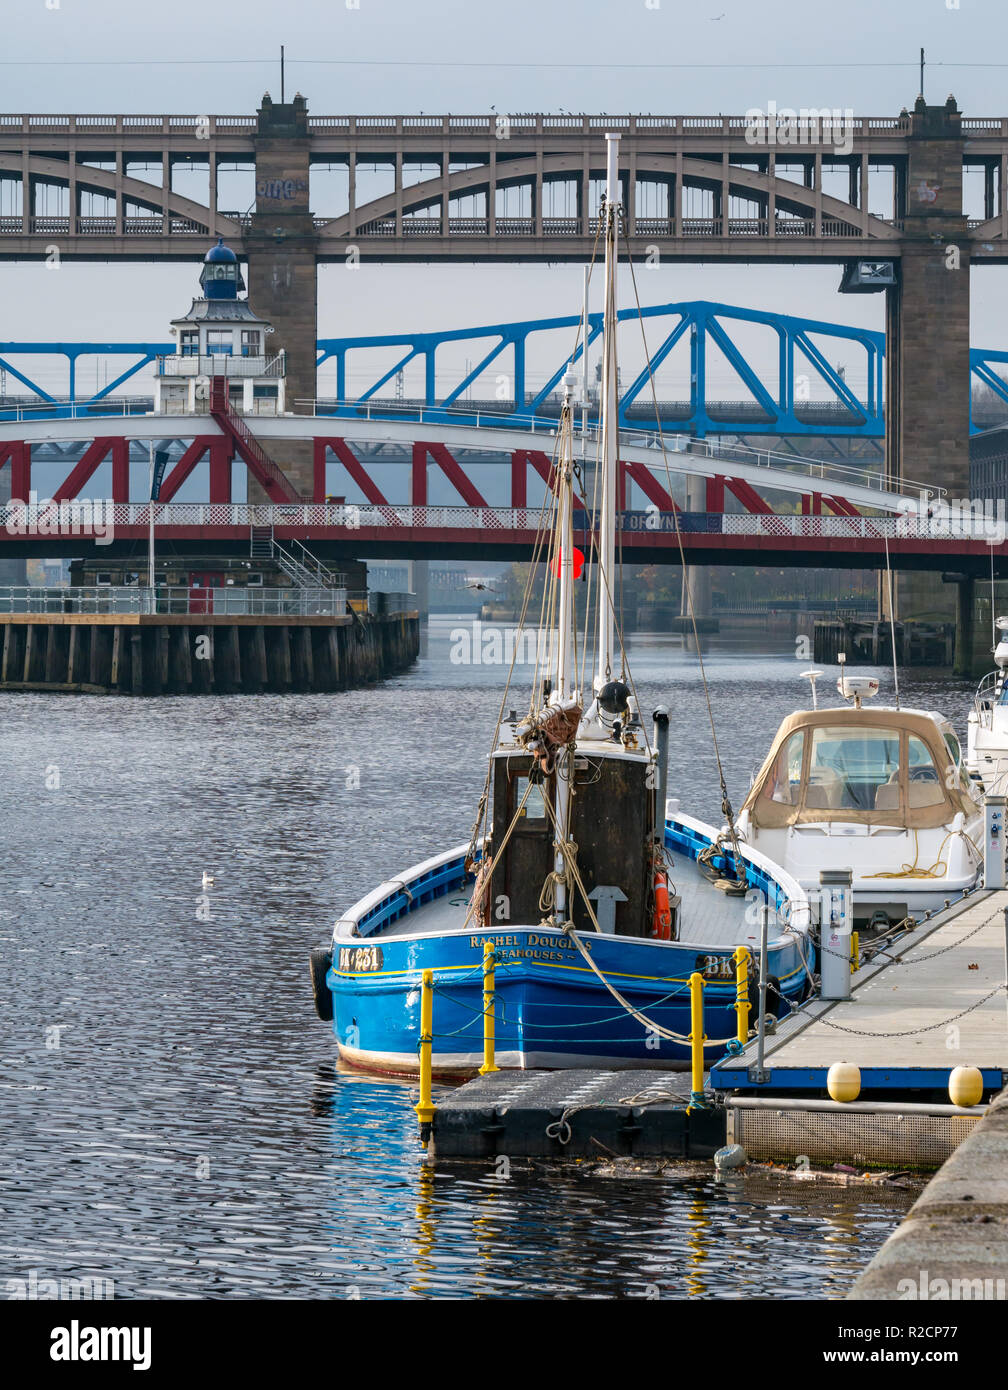 Viejo barco pesquero Rachel Douglas amarrado en el río Tyne con swing puente Tyne Bridge, ferrocarriles y puentes de alto nivel, Newcastle Upon Tyne, Inglaterra, Reino Unido. Foto de stock